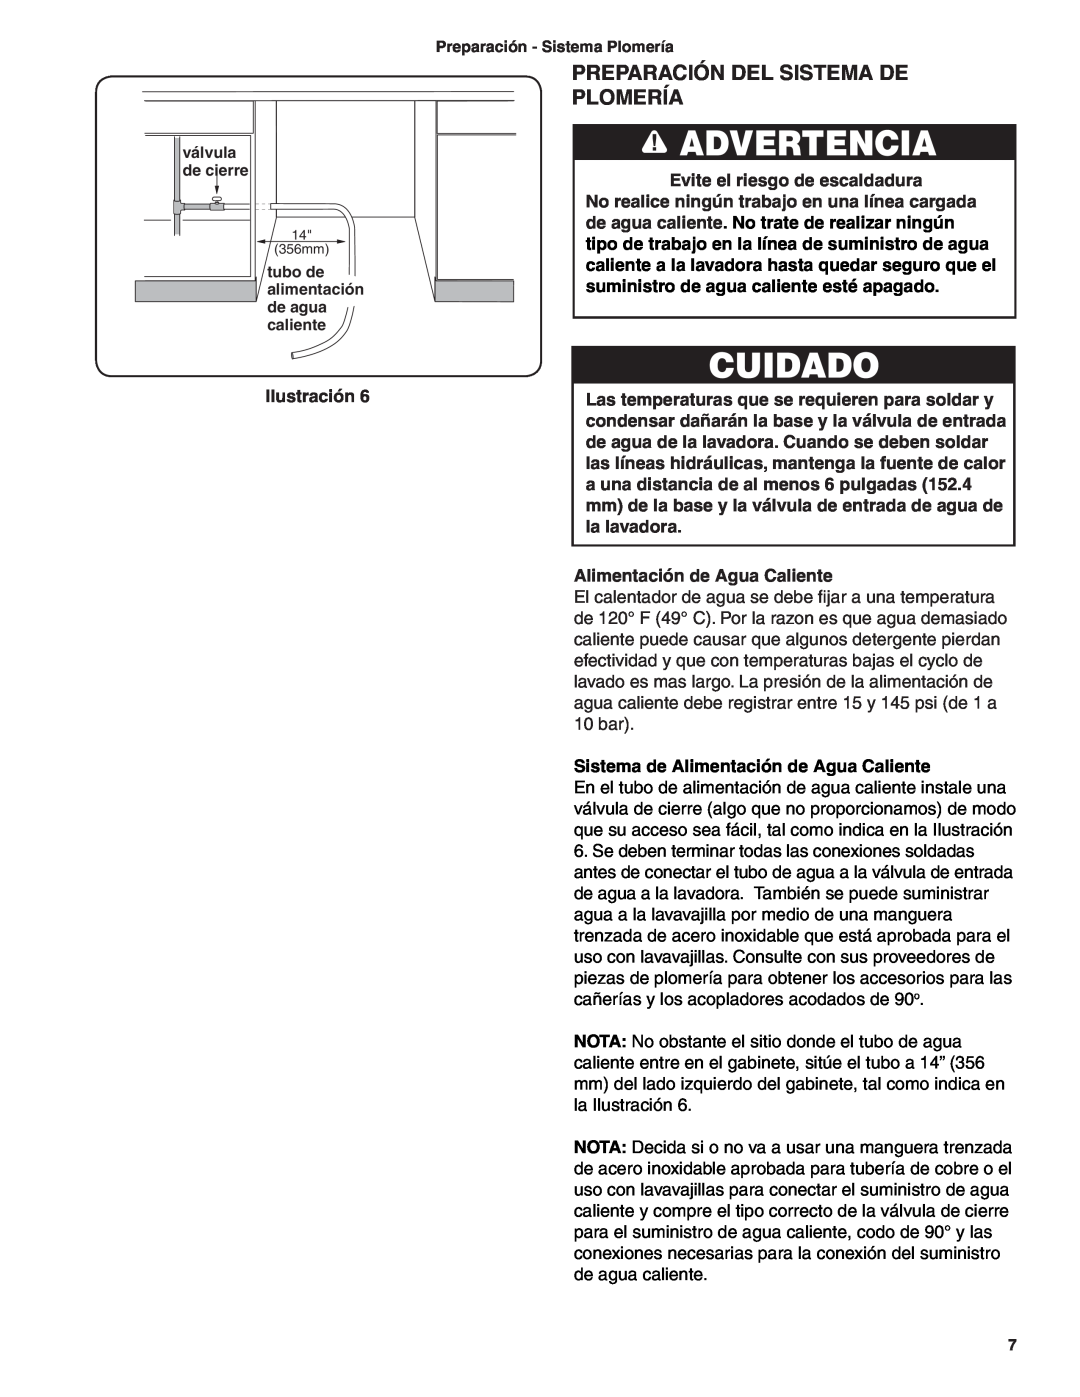 Bosch Appliances BSH Dishwasher important safety instructions Preparación Del Sistema De Plomería, Advertencia, Ilustración 